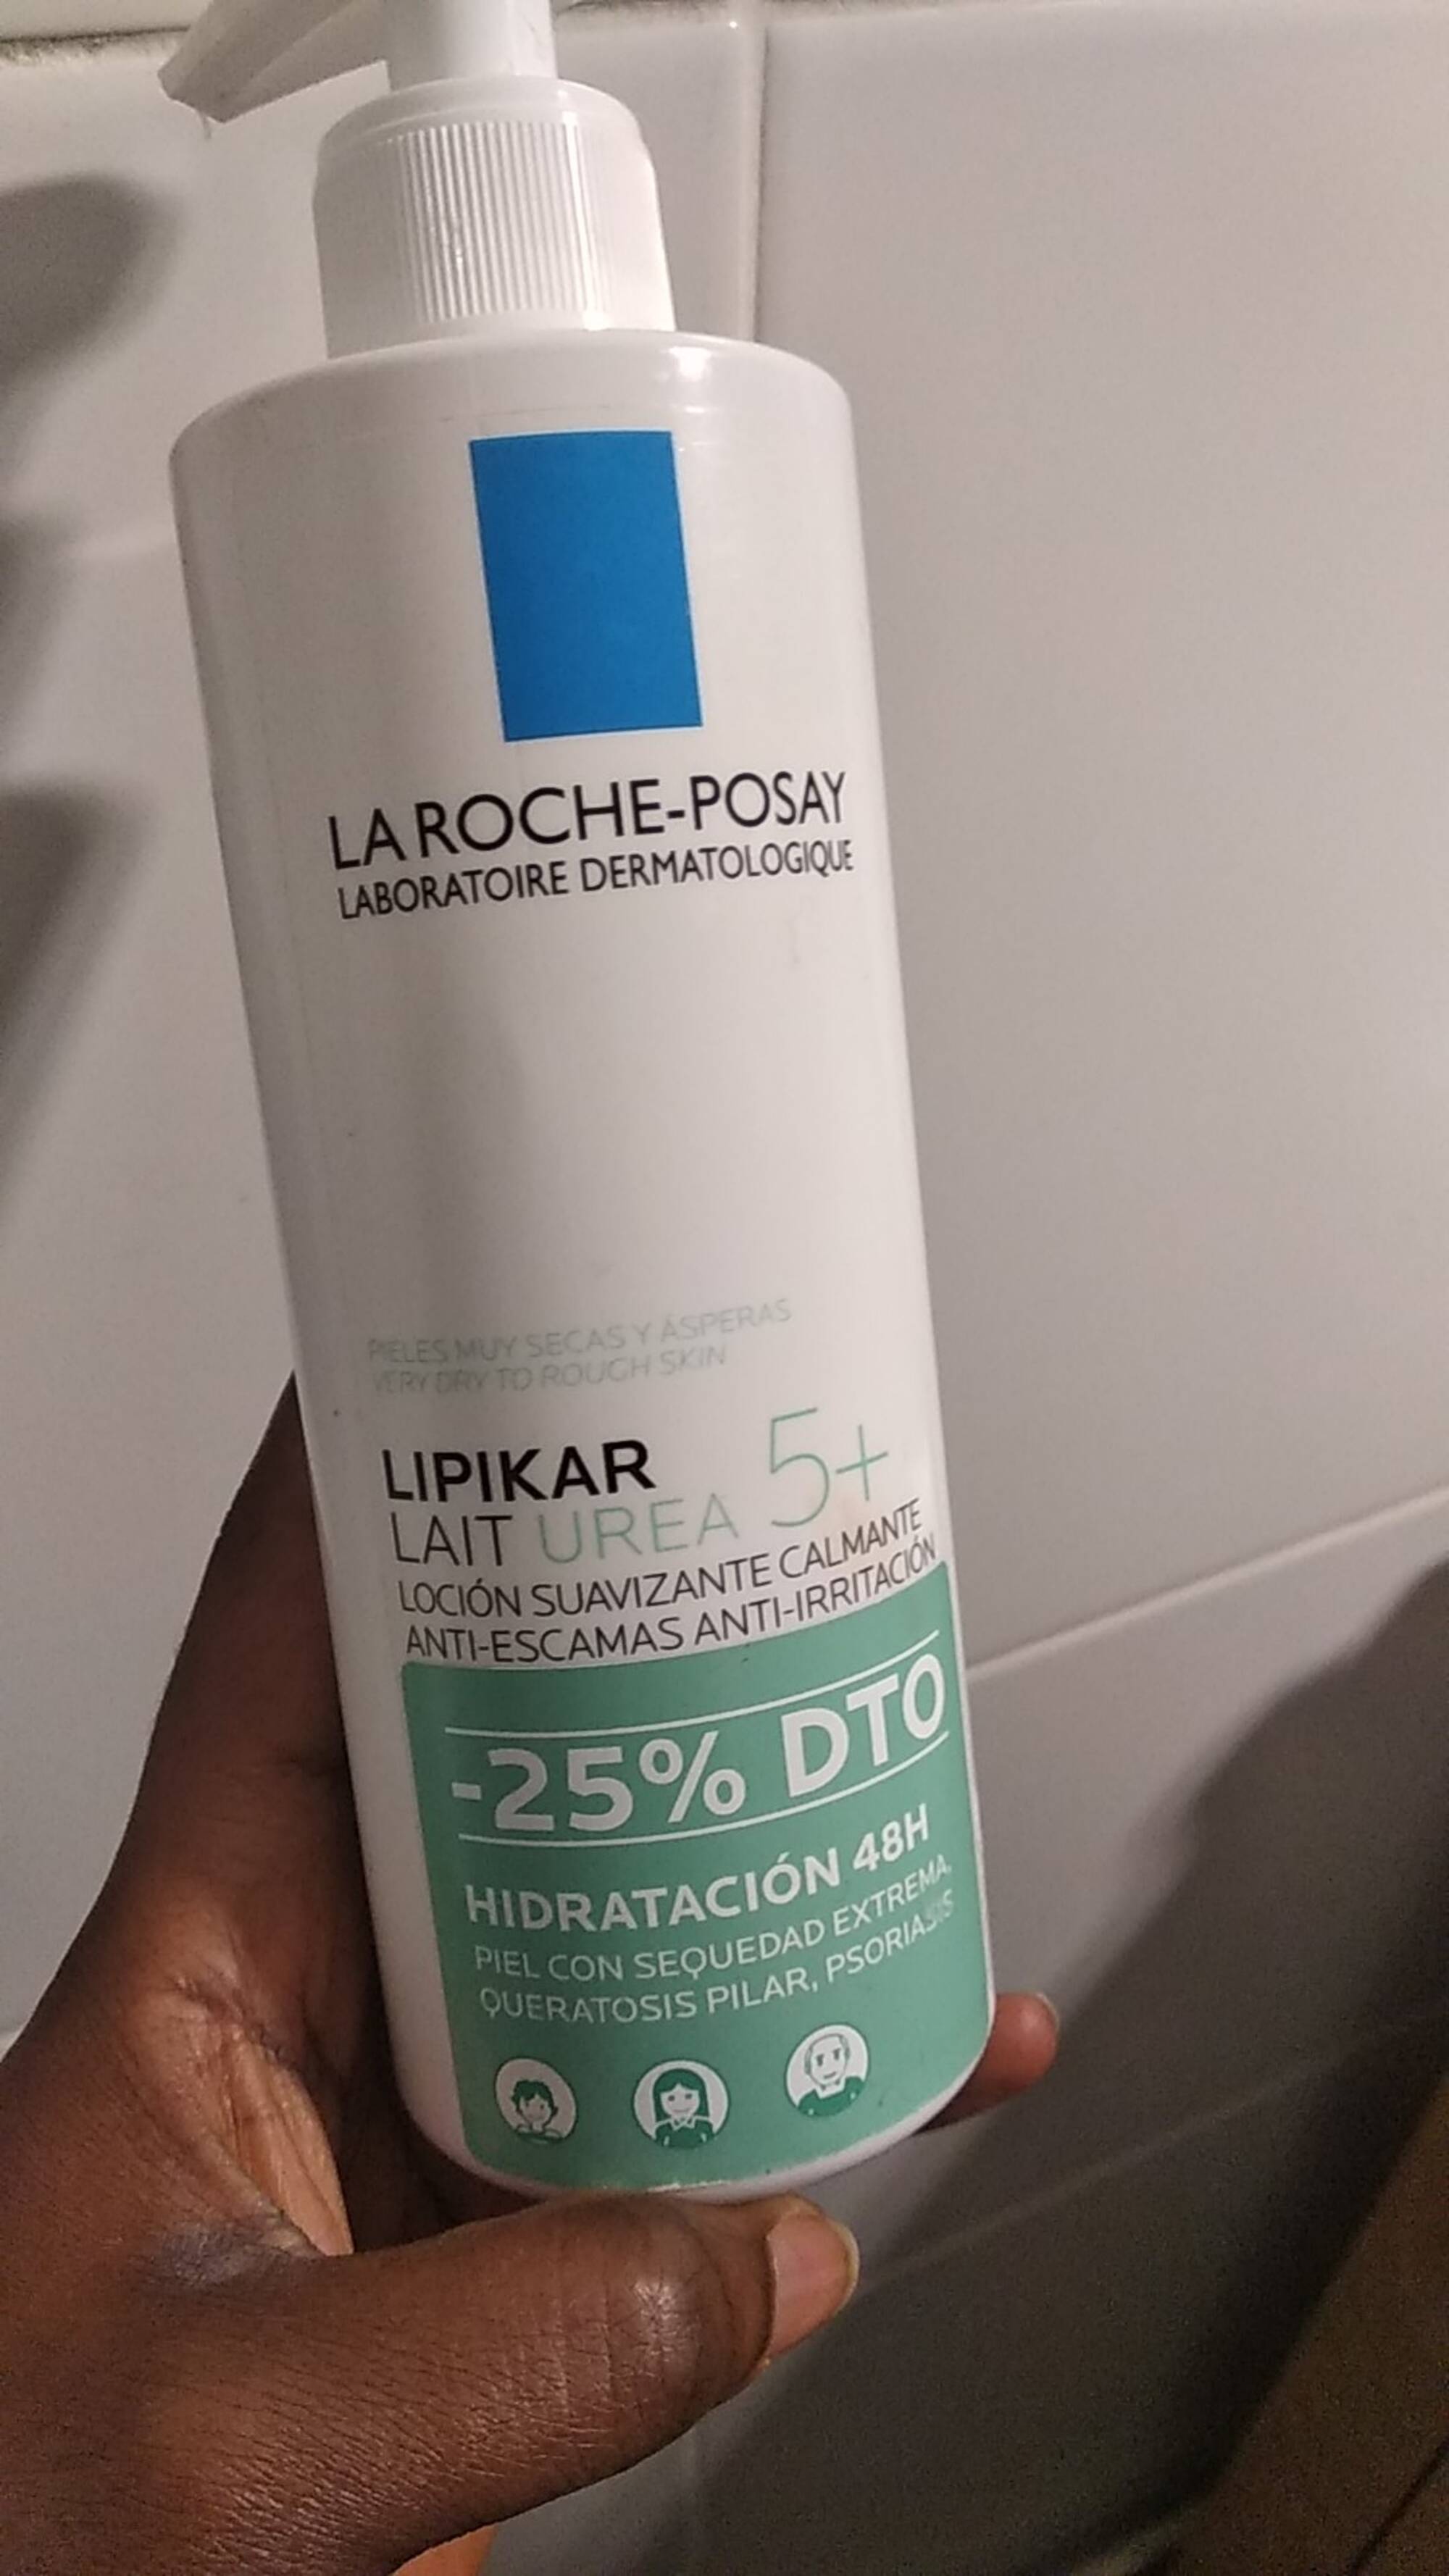 LA ROCHE-POSAY - Lipikar - Lait hidratación 48h